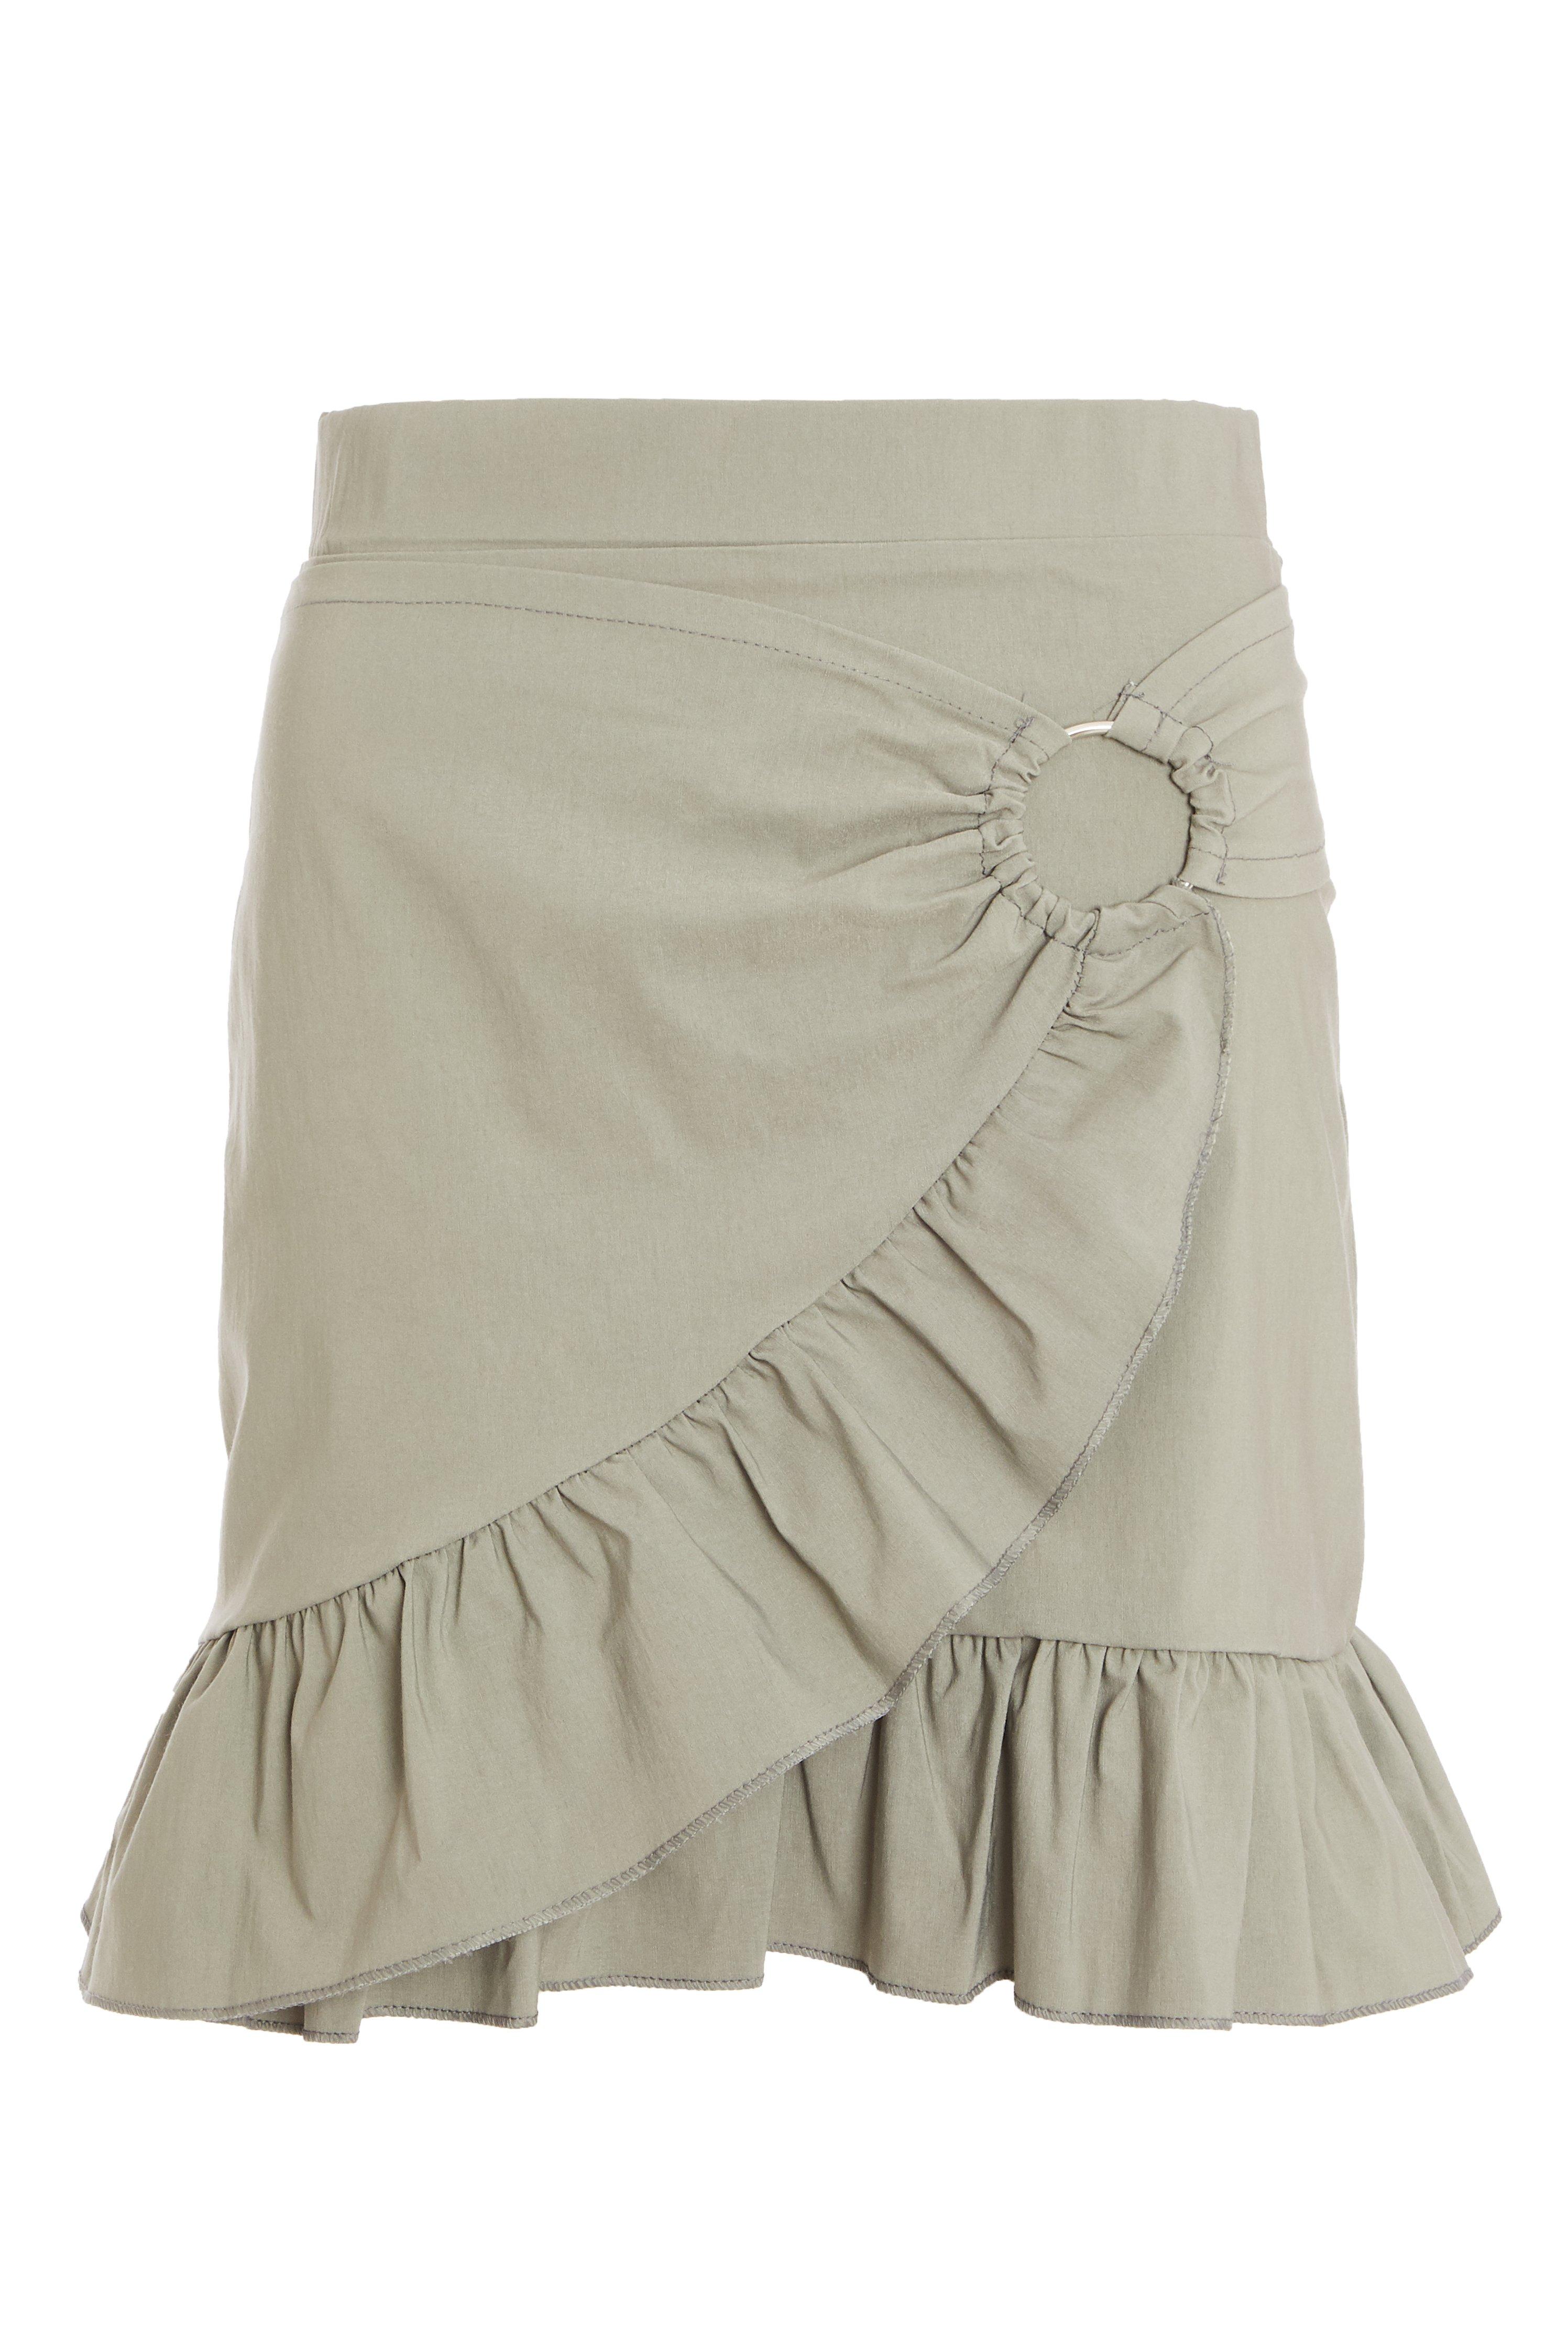 Khaki Frill Skirt - Quiz Clothing